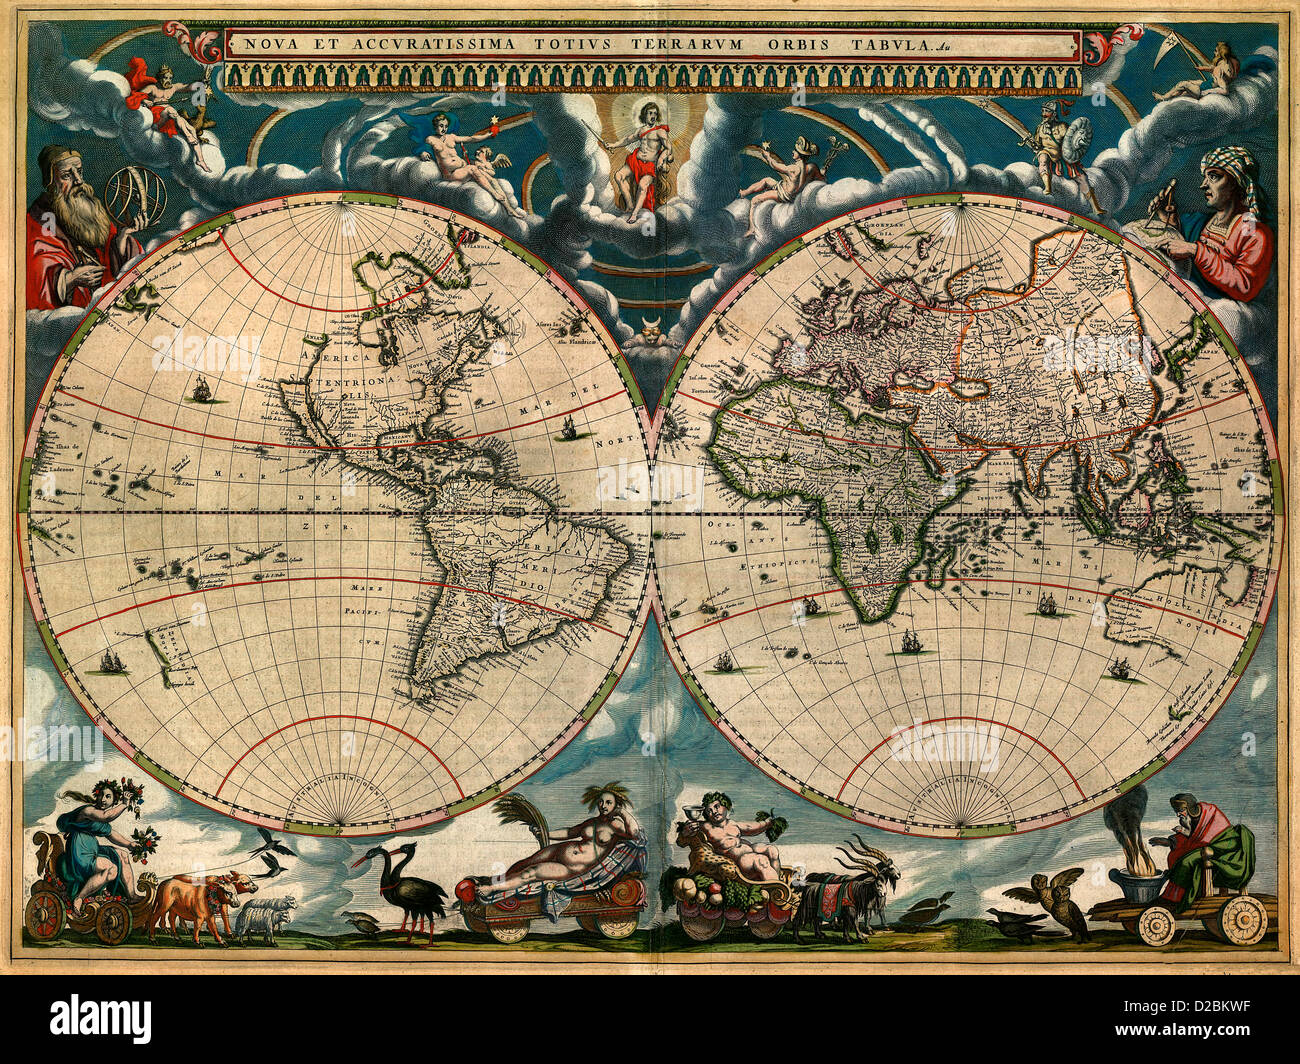 Nuova e accurata immagine di tutto il mondo, circa 1664 Nova et accuratissima totius orbis terrarum tabula1664 Foto Stock